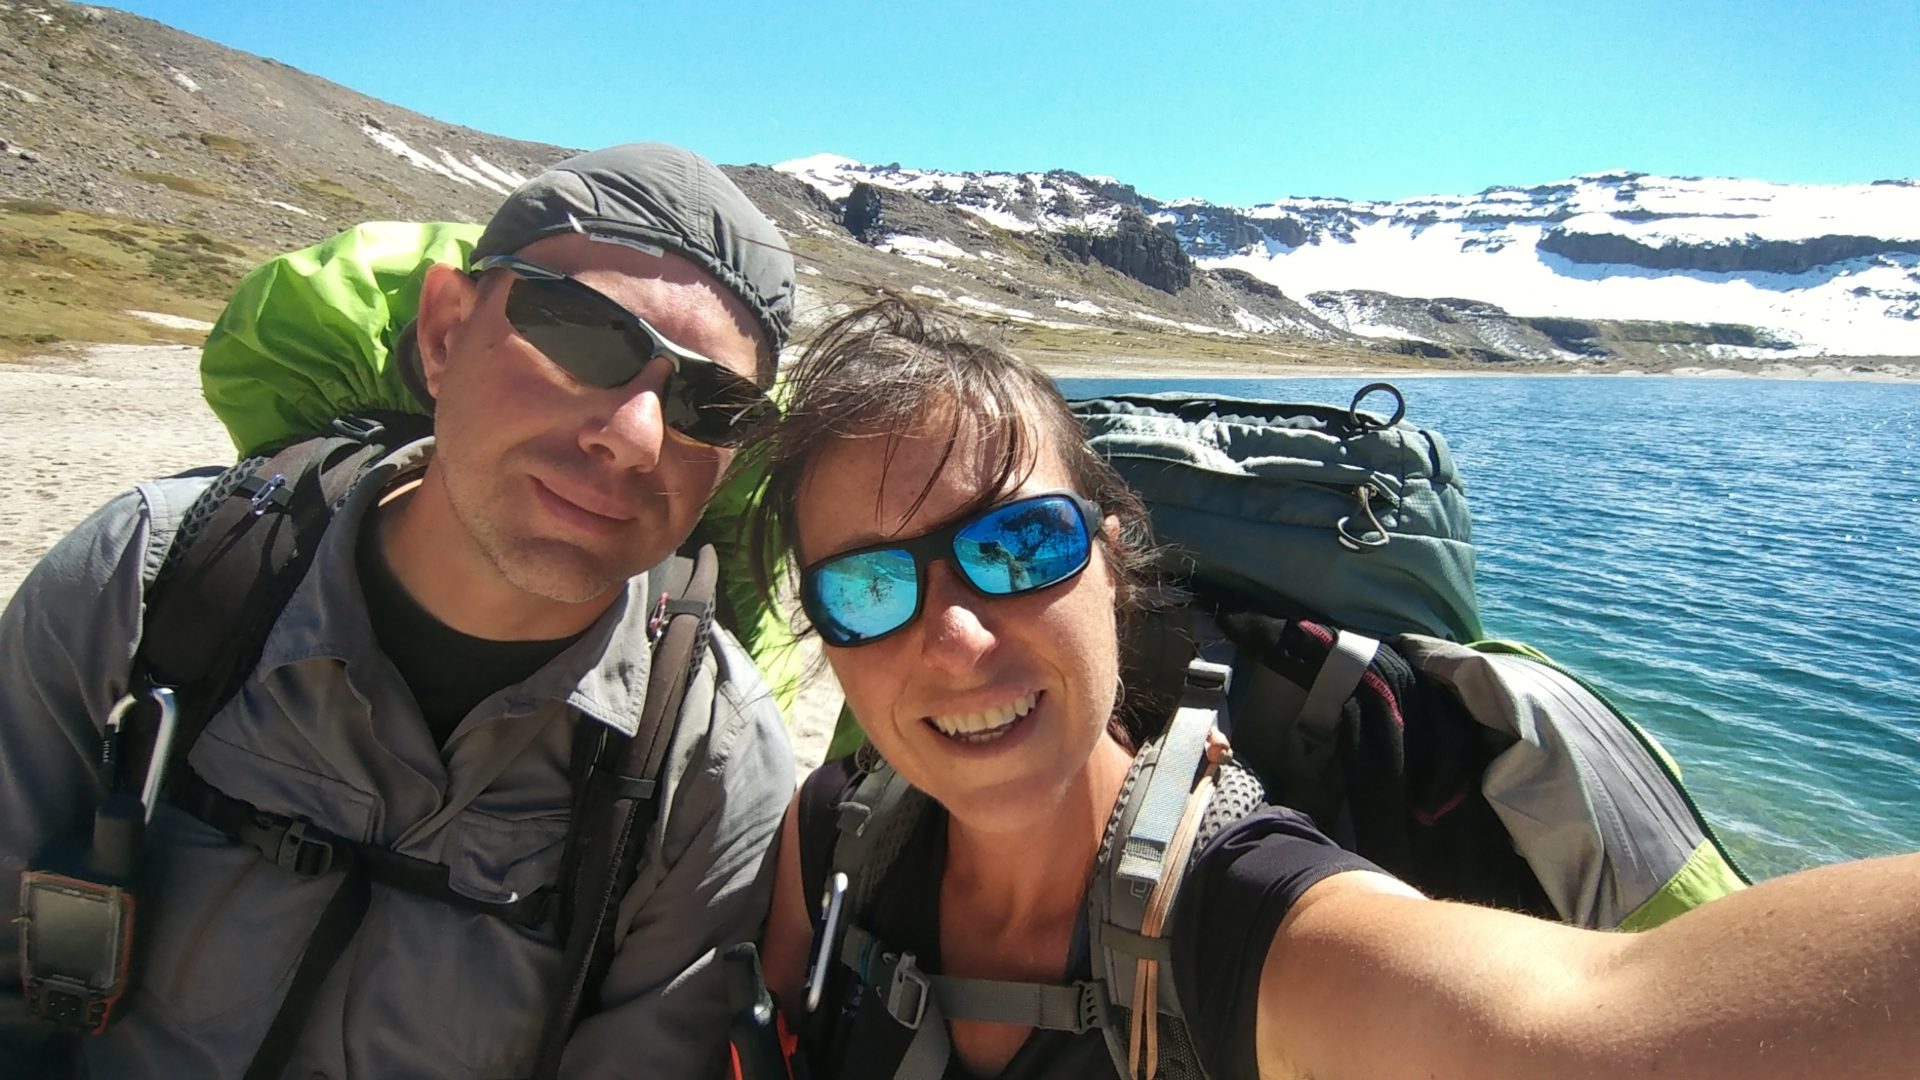 Spedizione “Greater Patagonian Trail” di 2 cuori in cammino: il racconto